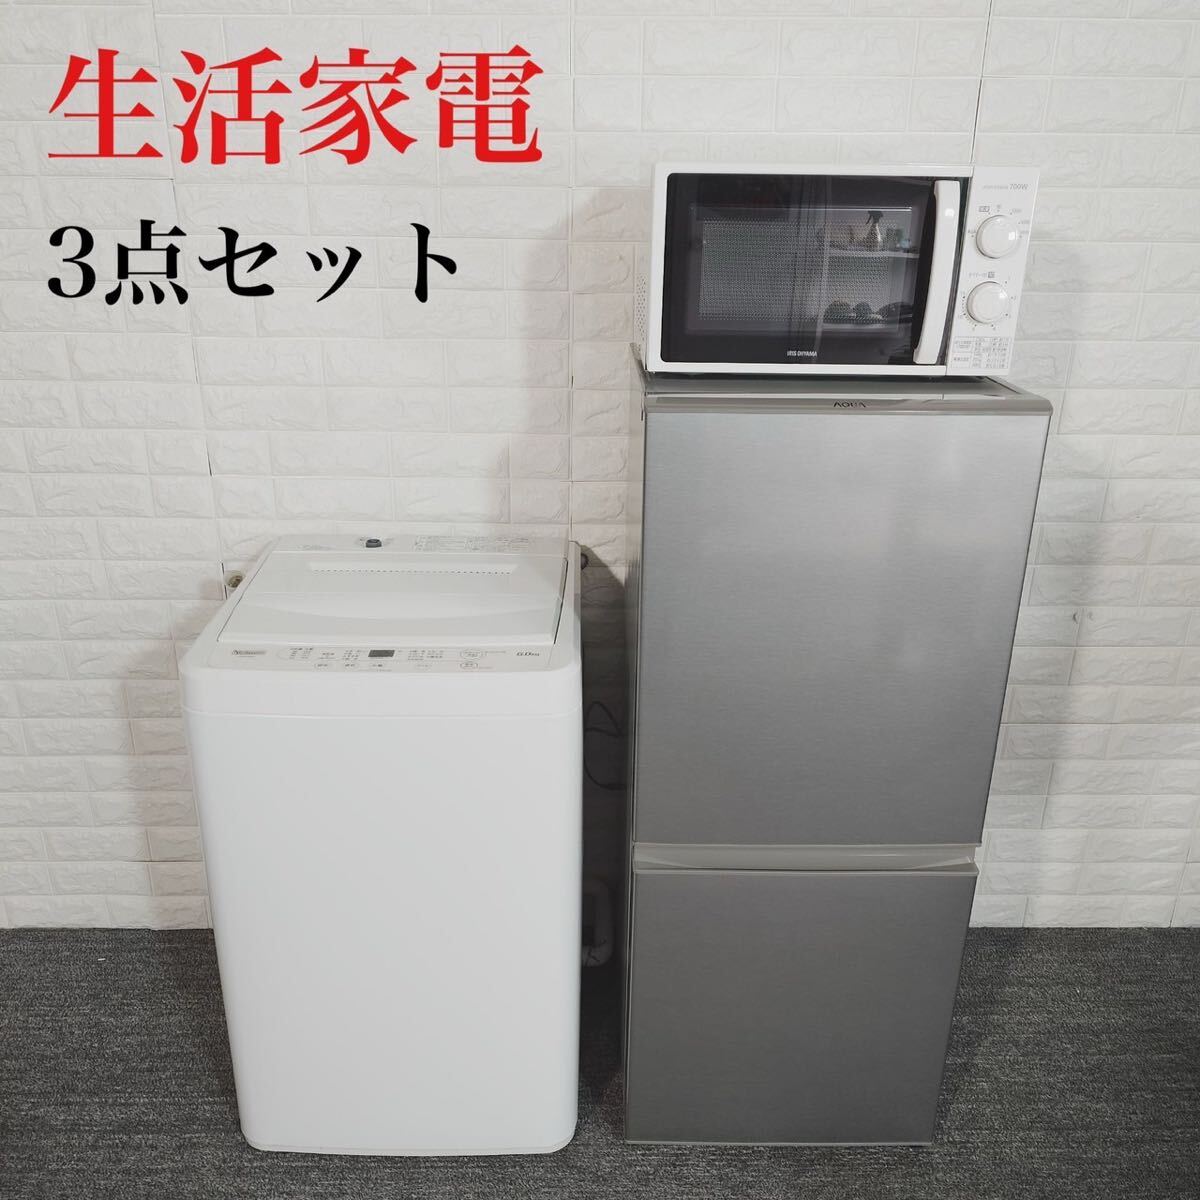 生活家電 3点セット 冷蔵庫 洗濯機 電子レンジ 1人暮し 家電 C0139